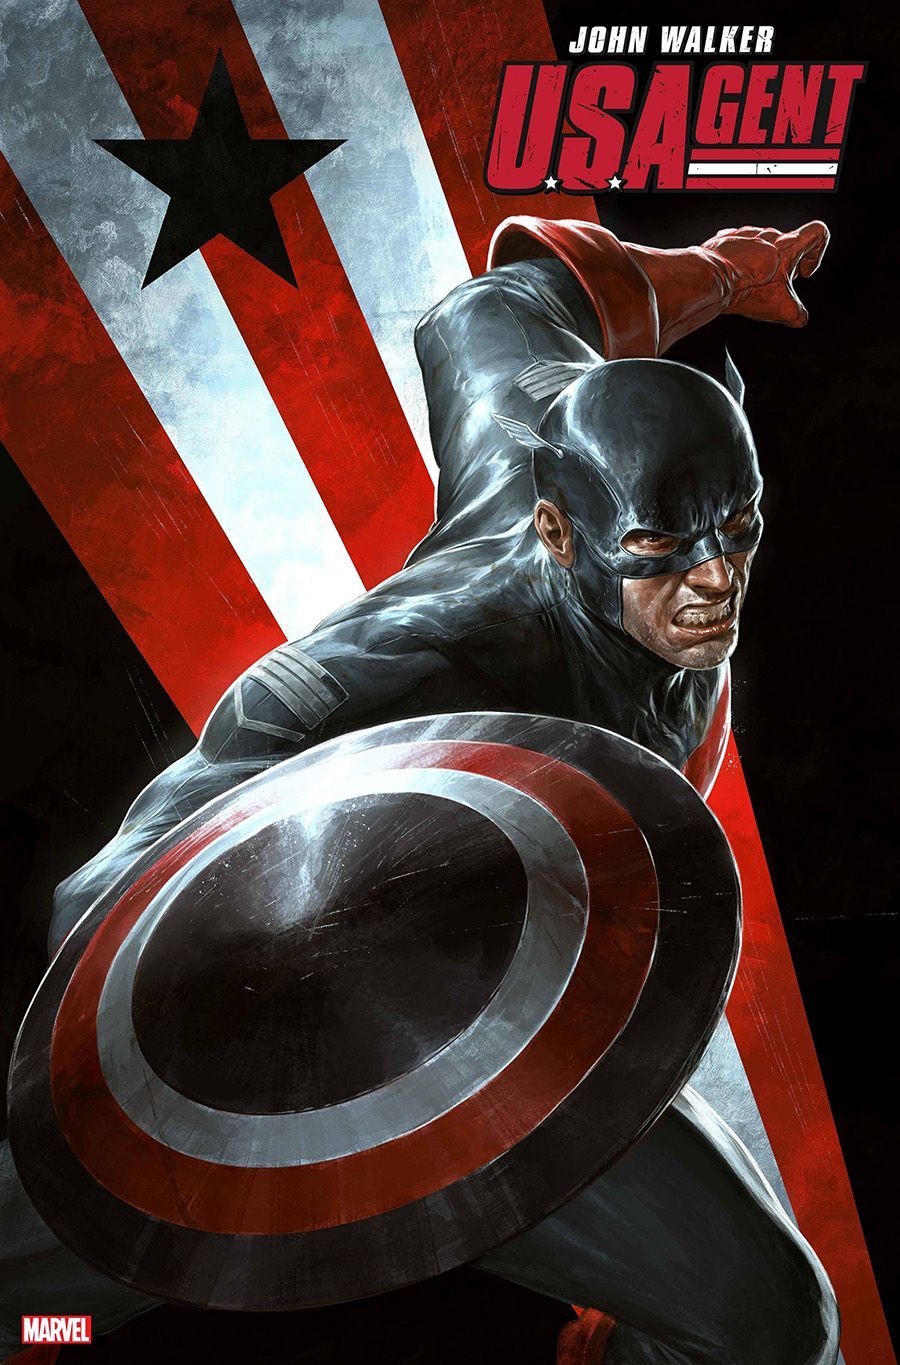 U.S.Agent. Captain america wallpaper, Iron man wallpaper, Marvel comics wallpaper